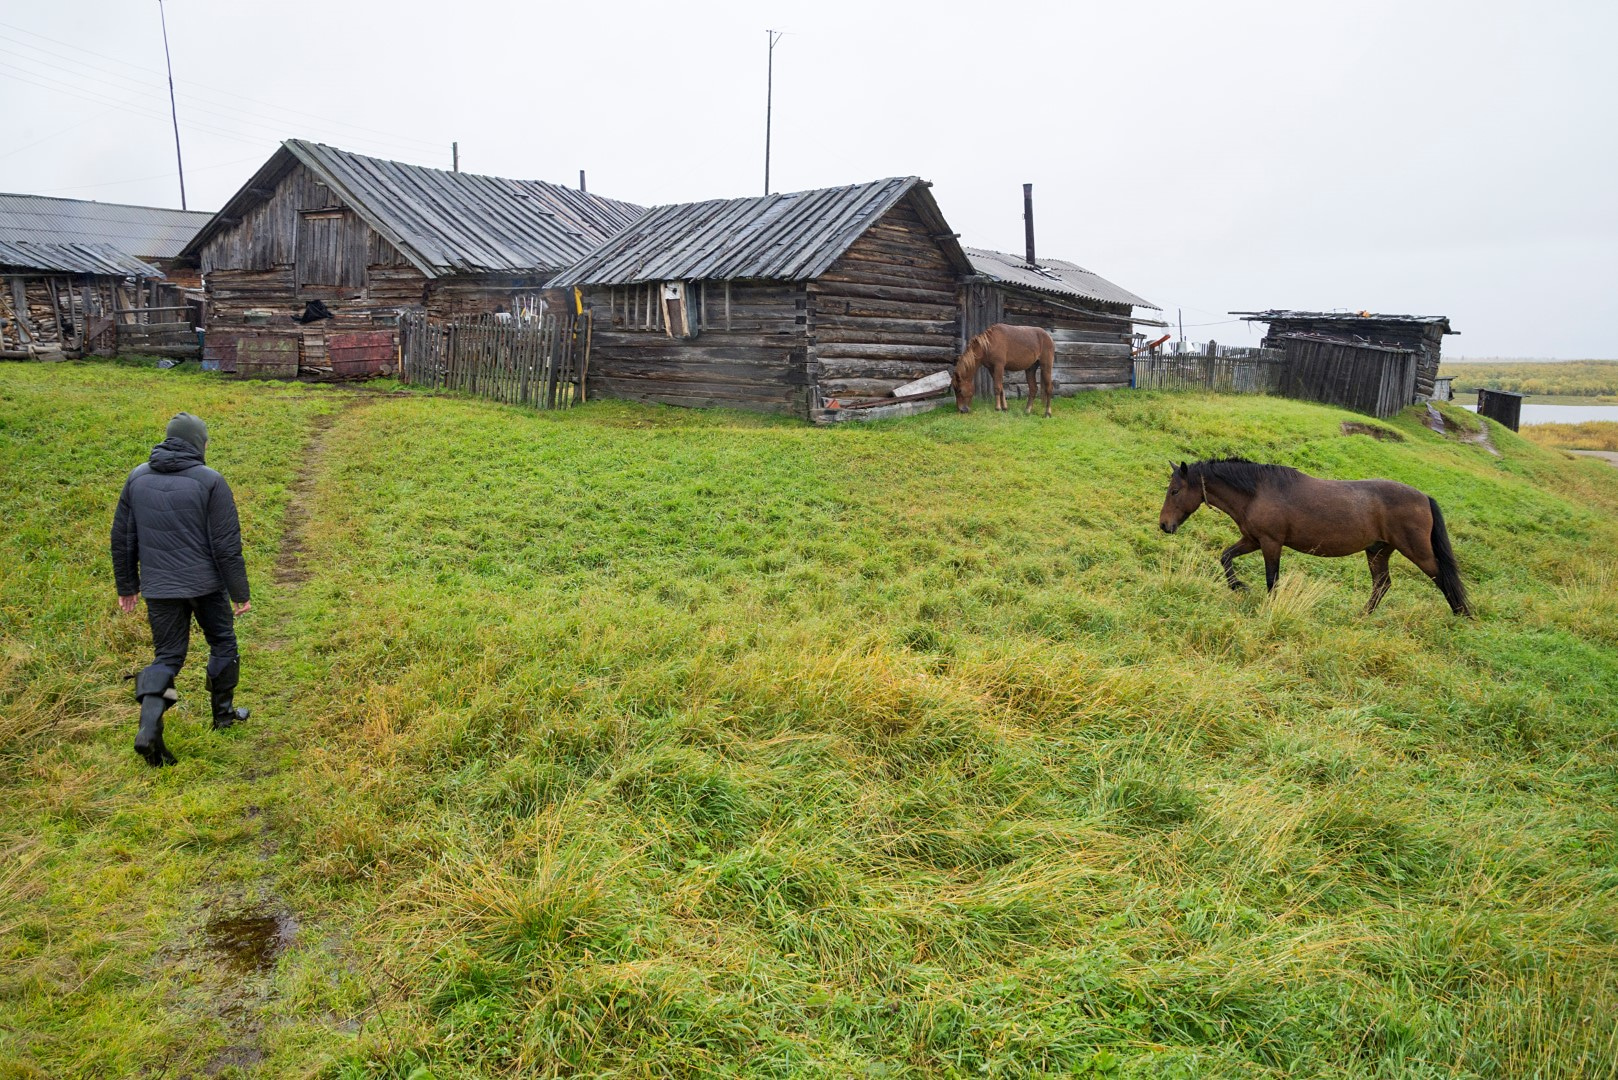 Za jemného deště se vracím z procházky osadou Kuššor do domu manželů Volotovských. Na loukách se pase stádo jejich koní.